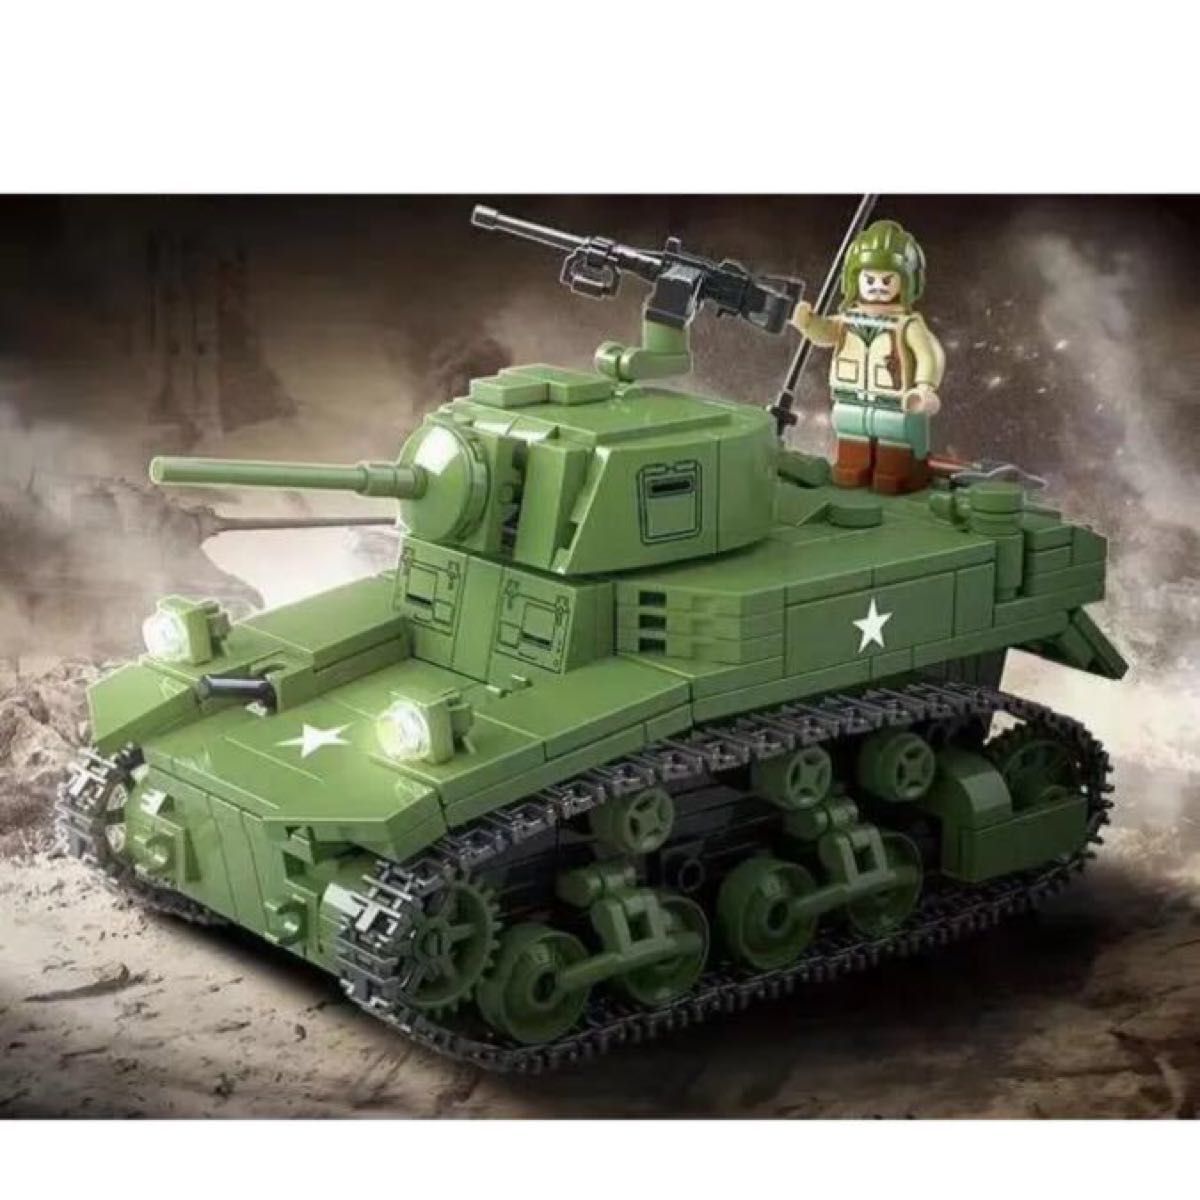 【レゴ互換】 M3A1軽戦車 イギリス軍 ミリタリー ブロック 模型 ミニフィグ